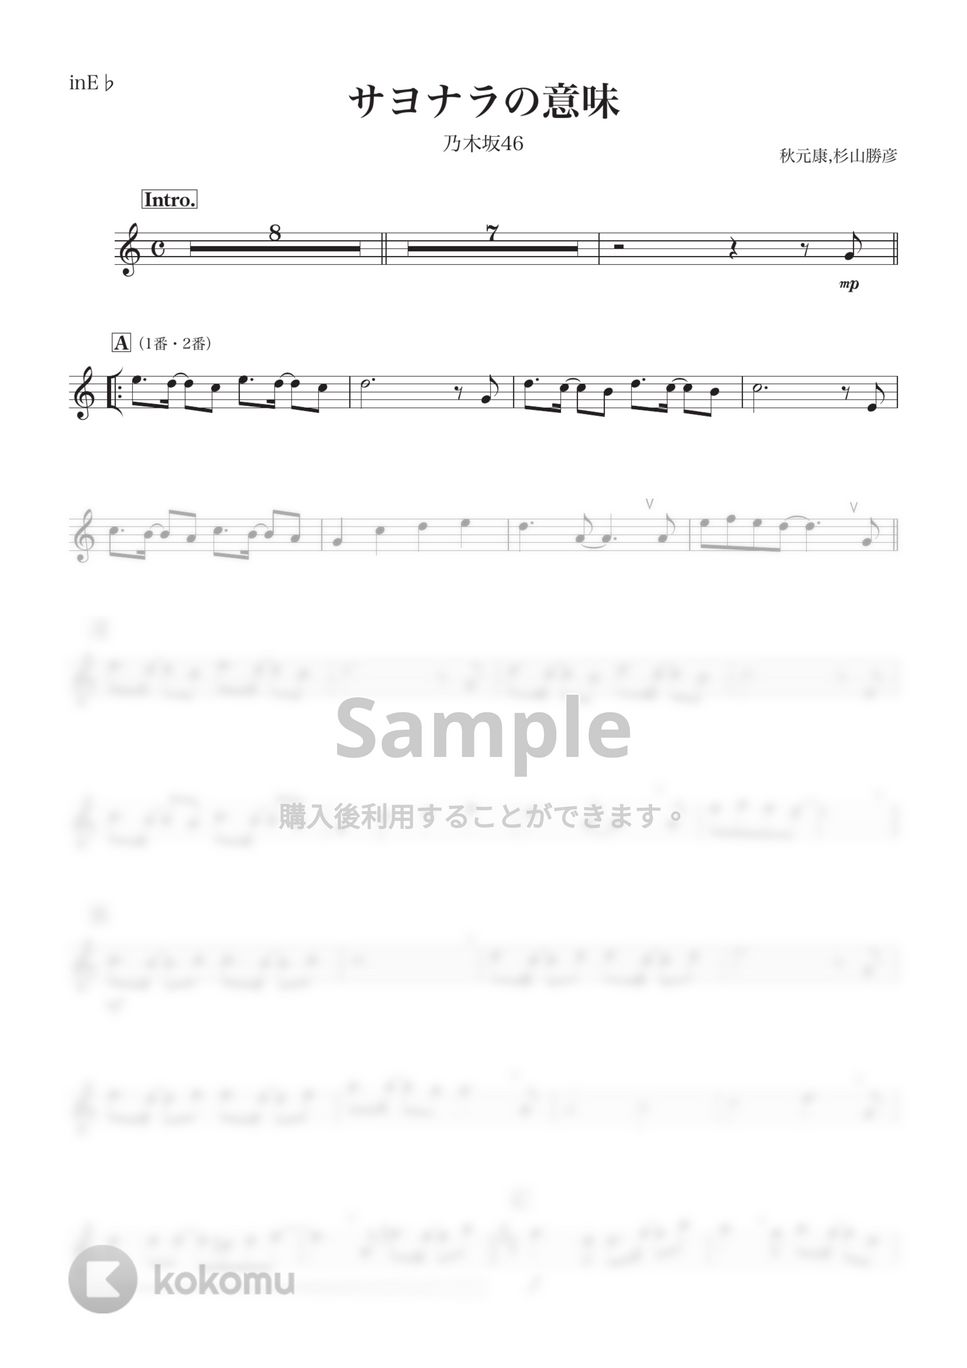 乃木坂46 - サヨナラの意味 (E♭) by kanamusic